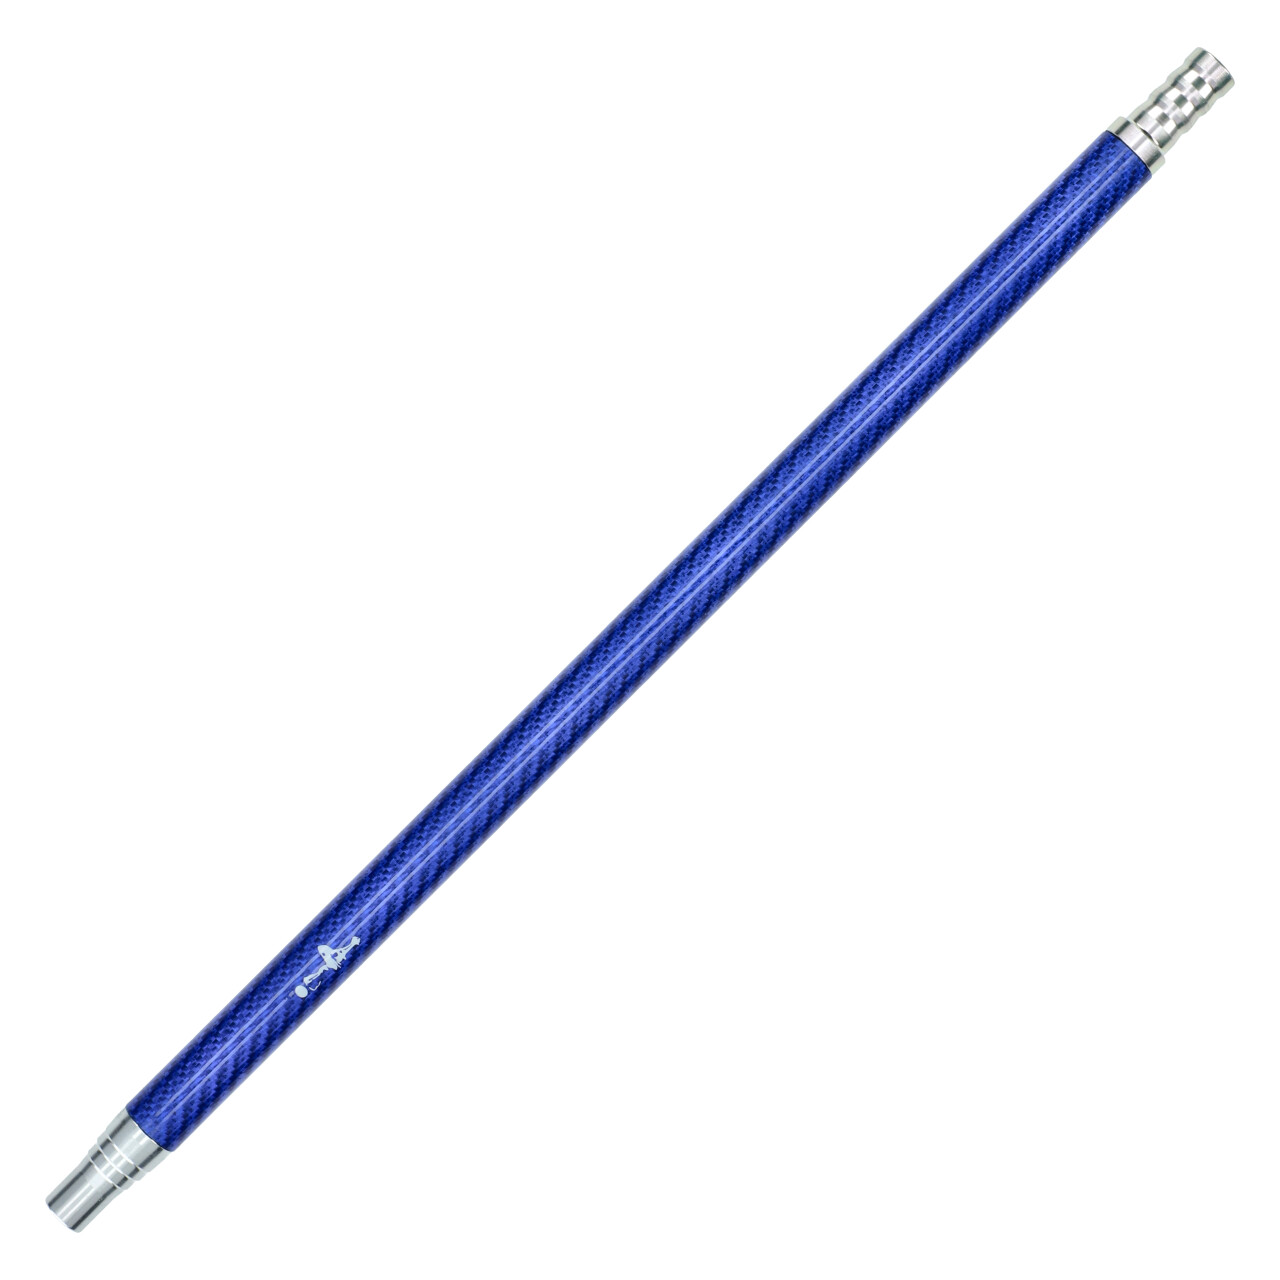 Aladin Mundstück Alu / Carbon Blau, 39 cm